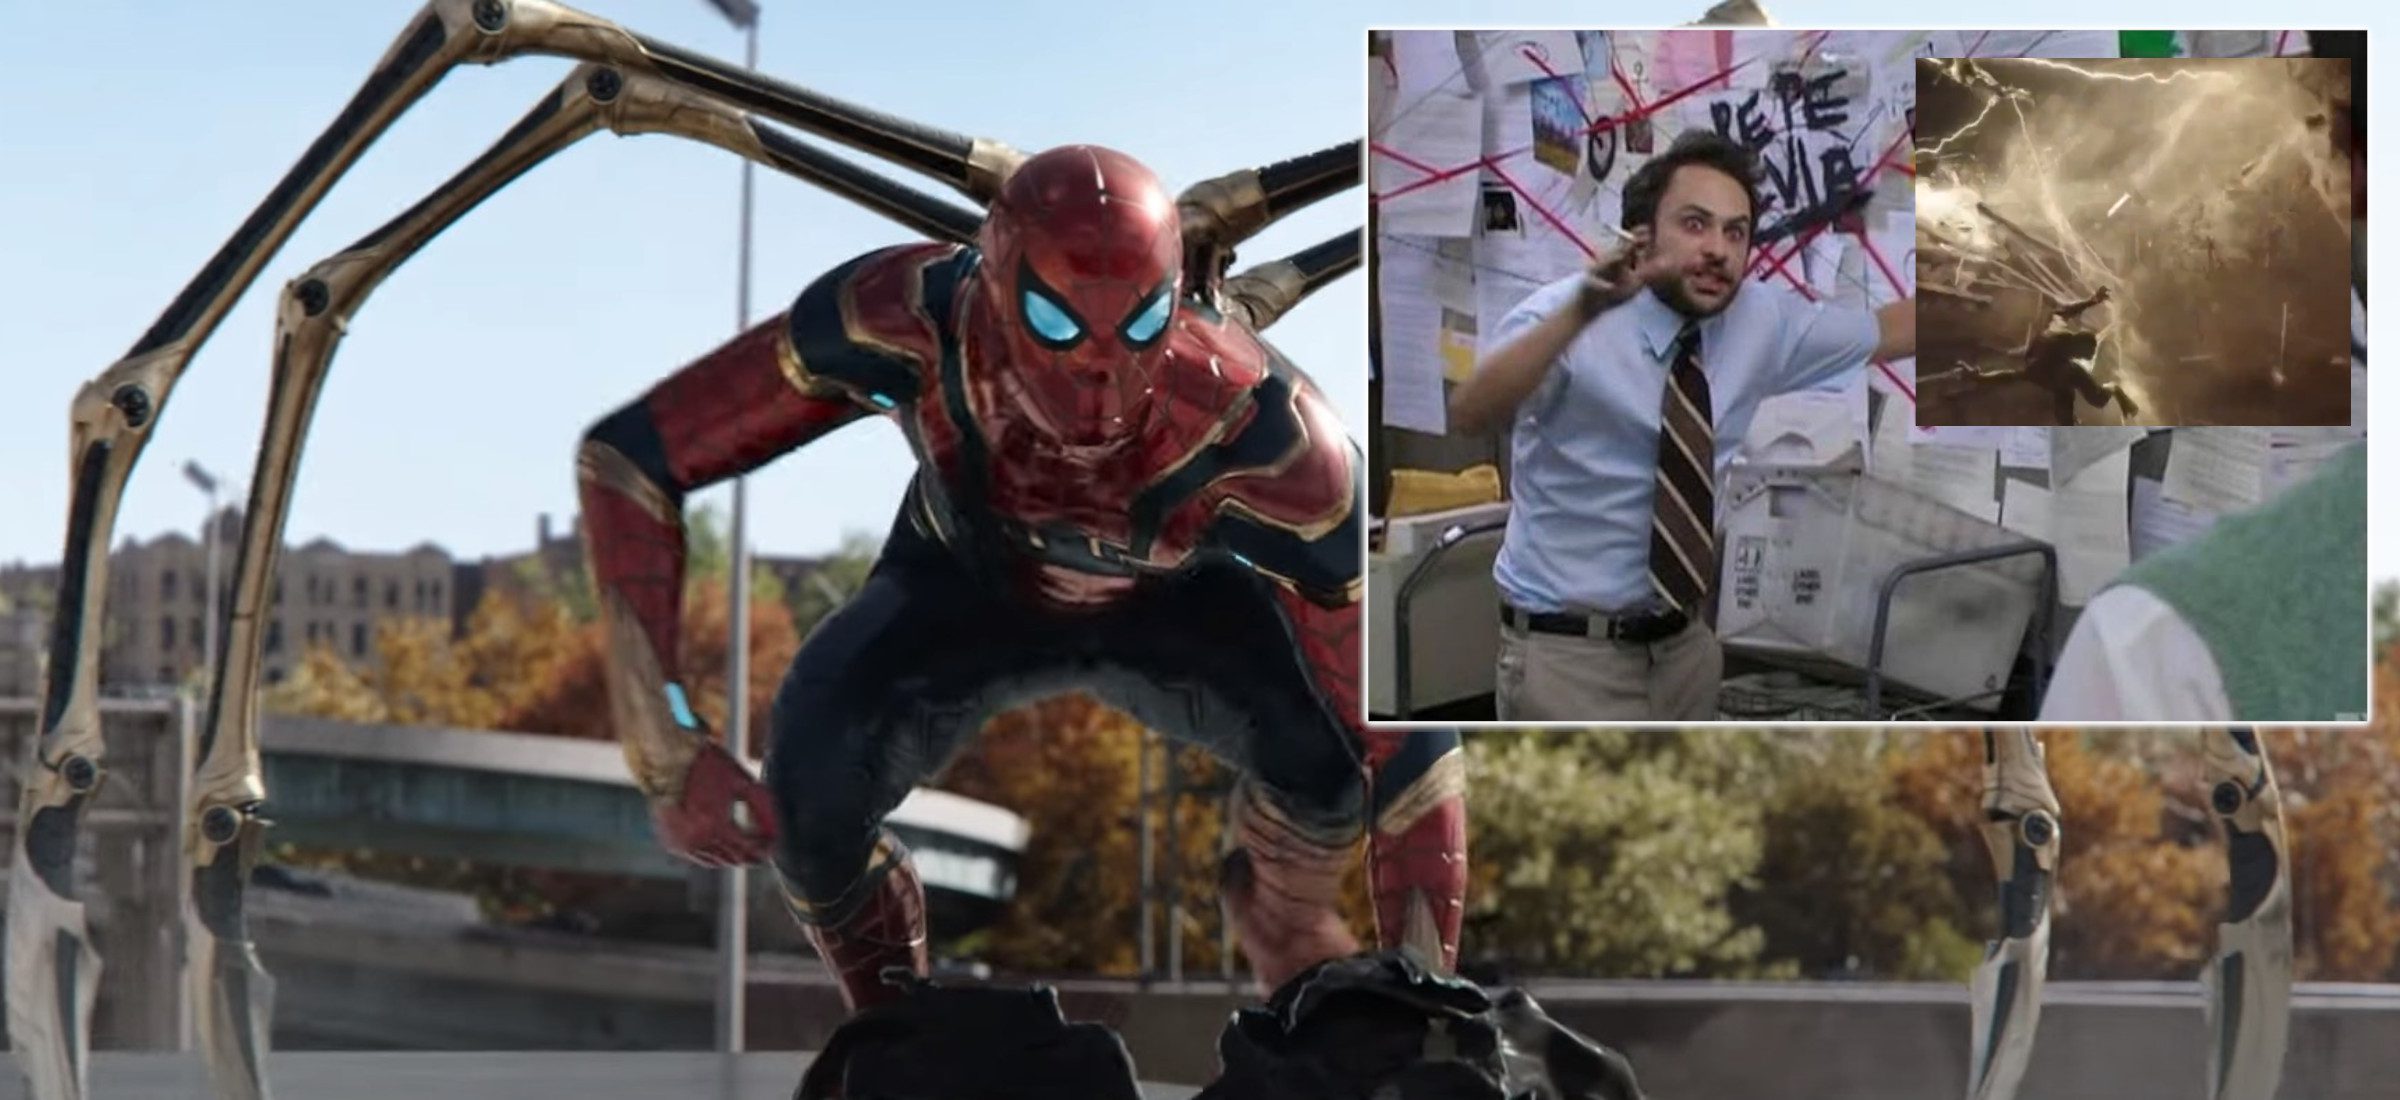 Maguire und Garfield wurden aus dem neuen Trailer gelöscht "Spider Man"? Fans feuerten auf der Bühne mit Lizard 102